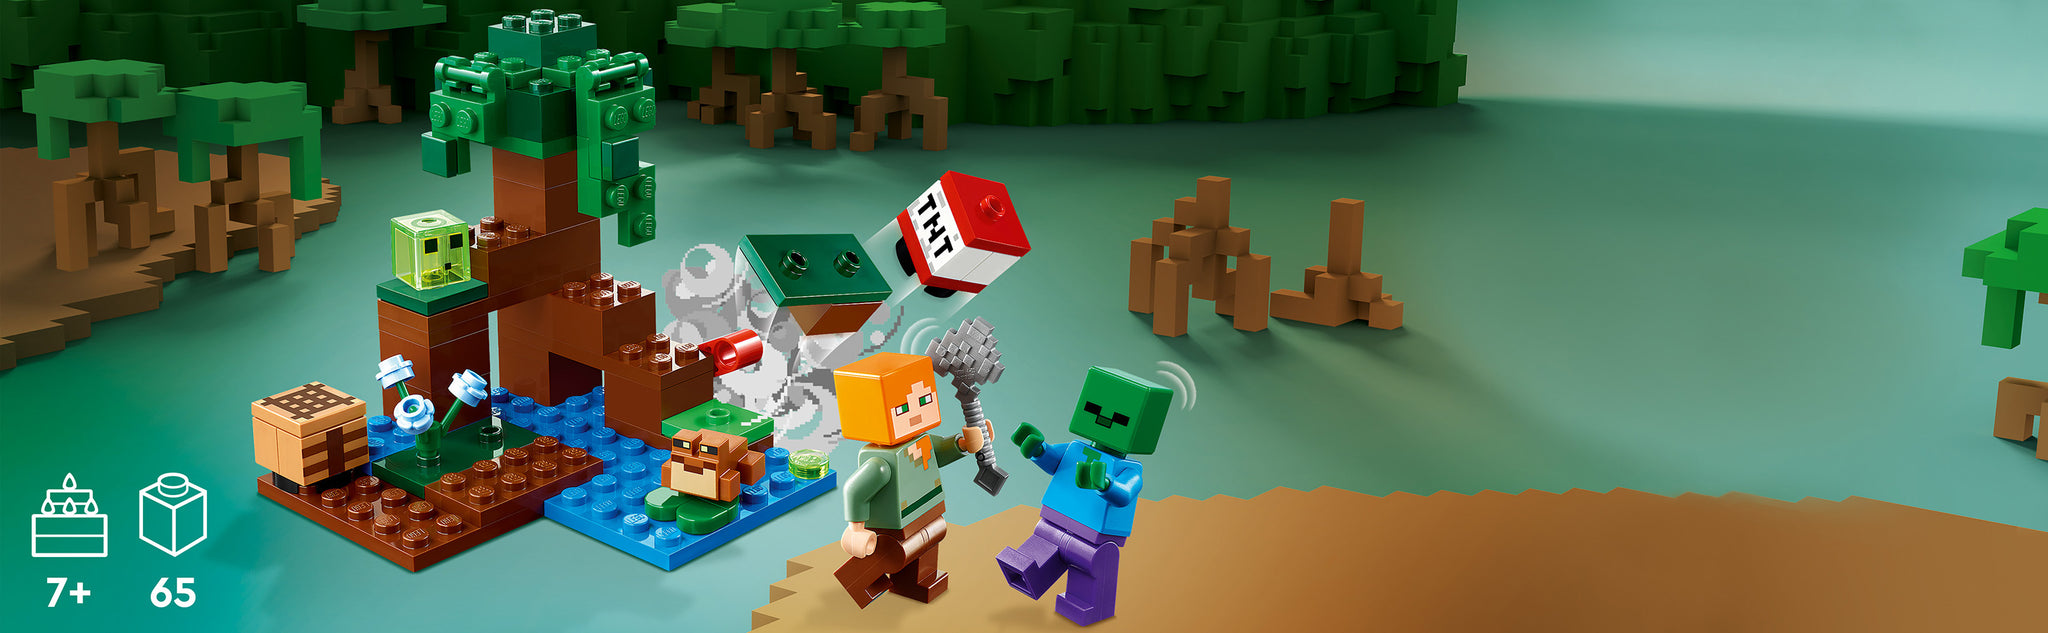 Verras Minecraft® spelers van 7 jaar en ouder met een moeras vol avontuur, actie en creativiteit met LEGO® Minecraft Het Moerasavontuur (21240).  Superleuk Minecraft speelgoed om te bouwen en te ontdekken Geef kinderen de creativiteit van Minecraft in handen met deze fysieke versie van het gevaarlijke moeraslandschap. Dit veelzijdige speelgoed bevat de bekende Minecraft favoriet Alex die door de modder en mangroven reist op een Minecraft avontuur. Naast mogelijkheden om creatief te bouwen, zijn er 2 vijandige mobs om het tegen op te nemen – een zombie en een slijm, maar ook een vriendelijke kikker die de actie observeert vanaf een lelieblad. Kinderen helpen Alex haar bijl te gebruiken en een hendel te bedienen om TNT tot ontploffing te brengen en elke aanval af te weren. Voor extra digitaal plezier heeft de LEGO Builder app intuïtieve zoom- en draaifuncties waarmee kinderen hun model kunnen visualiseren terwijl ze het bouwen.  Creatieve Minecraft® speelset – LEGO® Minecraft Het Moerasavontuur (21240) bootst het mangrovemoeras van het spel na en zit boordevol mogelijkheden om creatief te bouwen en spannende confrontaties na te spelen Bekende personages – bevat de Minecraft® favorieten Alex, een zombie, een slijmblok en een kikker in een moeraslandschap compleet met een mangroveboom, werkbank, bijl en exploderende TNT-functie Veel speelmogelijkheden – kinderen kunnen bouwen, verkennen, strijden en TNT tot ontploffing brengen terwijl ze vijandige mobs in het gevaarlijke mangrovemoeras afweren Leuk cadeau voor kinderen – verras Minecraft® spelers van 7 jaar en ouder met deze fysieke versie van het spannende moeras uit de game voor een verjaardag, de feestdagen of een andere gelegenheid Ook voor onderweg – deze compacte set is ca. 8 cm hoog, 9 cm breed en 8 cm diep en biedt diverse speelmogelijkheden Interactief digitaal bouwen – de LEGO® Builder app heeft intuïtieve zoom- en draaifuncties waarmee kinderen hun model kunnen visualiseren terwijl ze het bouwen Minecraft® in het echt – met LEGO® Minecraft sets beleven kinderen de populaire game op een andere manier met mobs, omgevingen en kenmerken die tot leven worden gebracht met LEGO stenen Kwaliteit gegarandeerd – LEGO® onderdelen voldoen aan strenge kwaliteitsnormen, waardoor ze consistent, compatibel en comfortabel in elkaar te zetten zijn Veiligheid staat voorop – LEGO® onderdelen worden gegooid, verhit, geplet, gedraaid engeanalyseerd om er zeker van te zijn dat ze voldoen aan strikte wereldwijde veiligheidsnormen